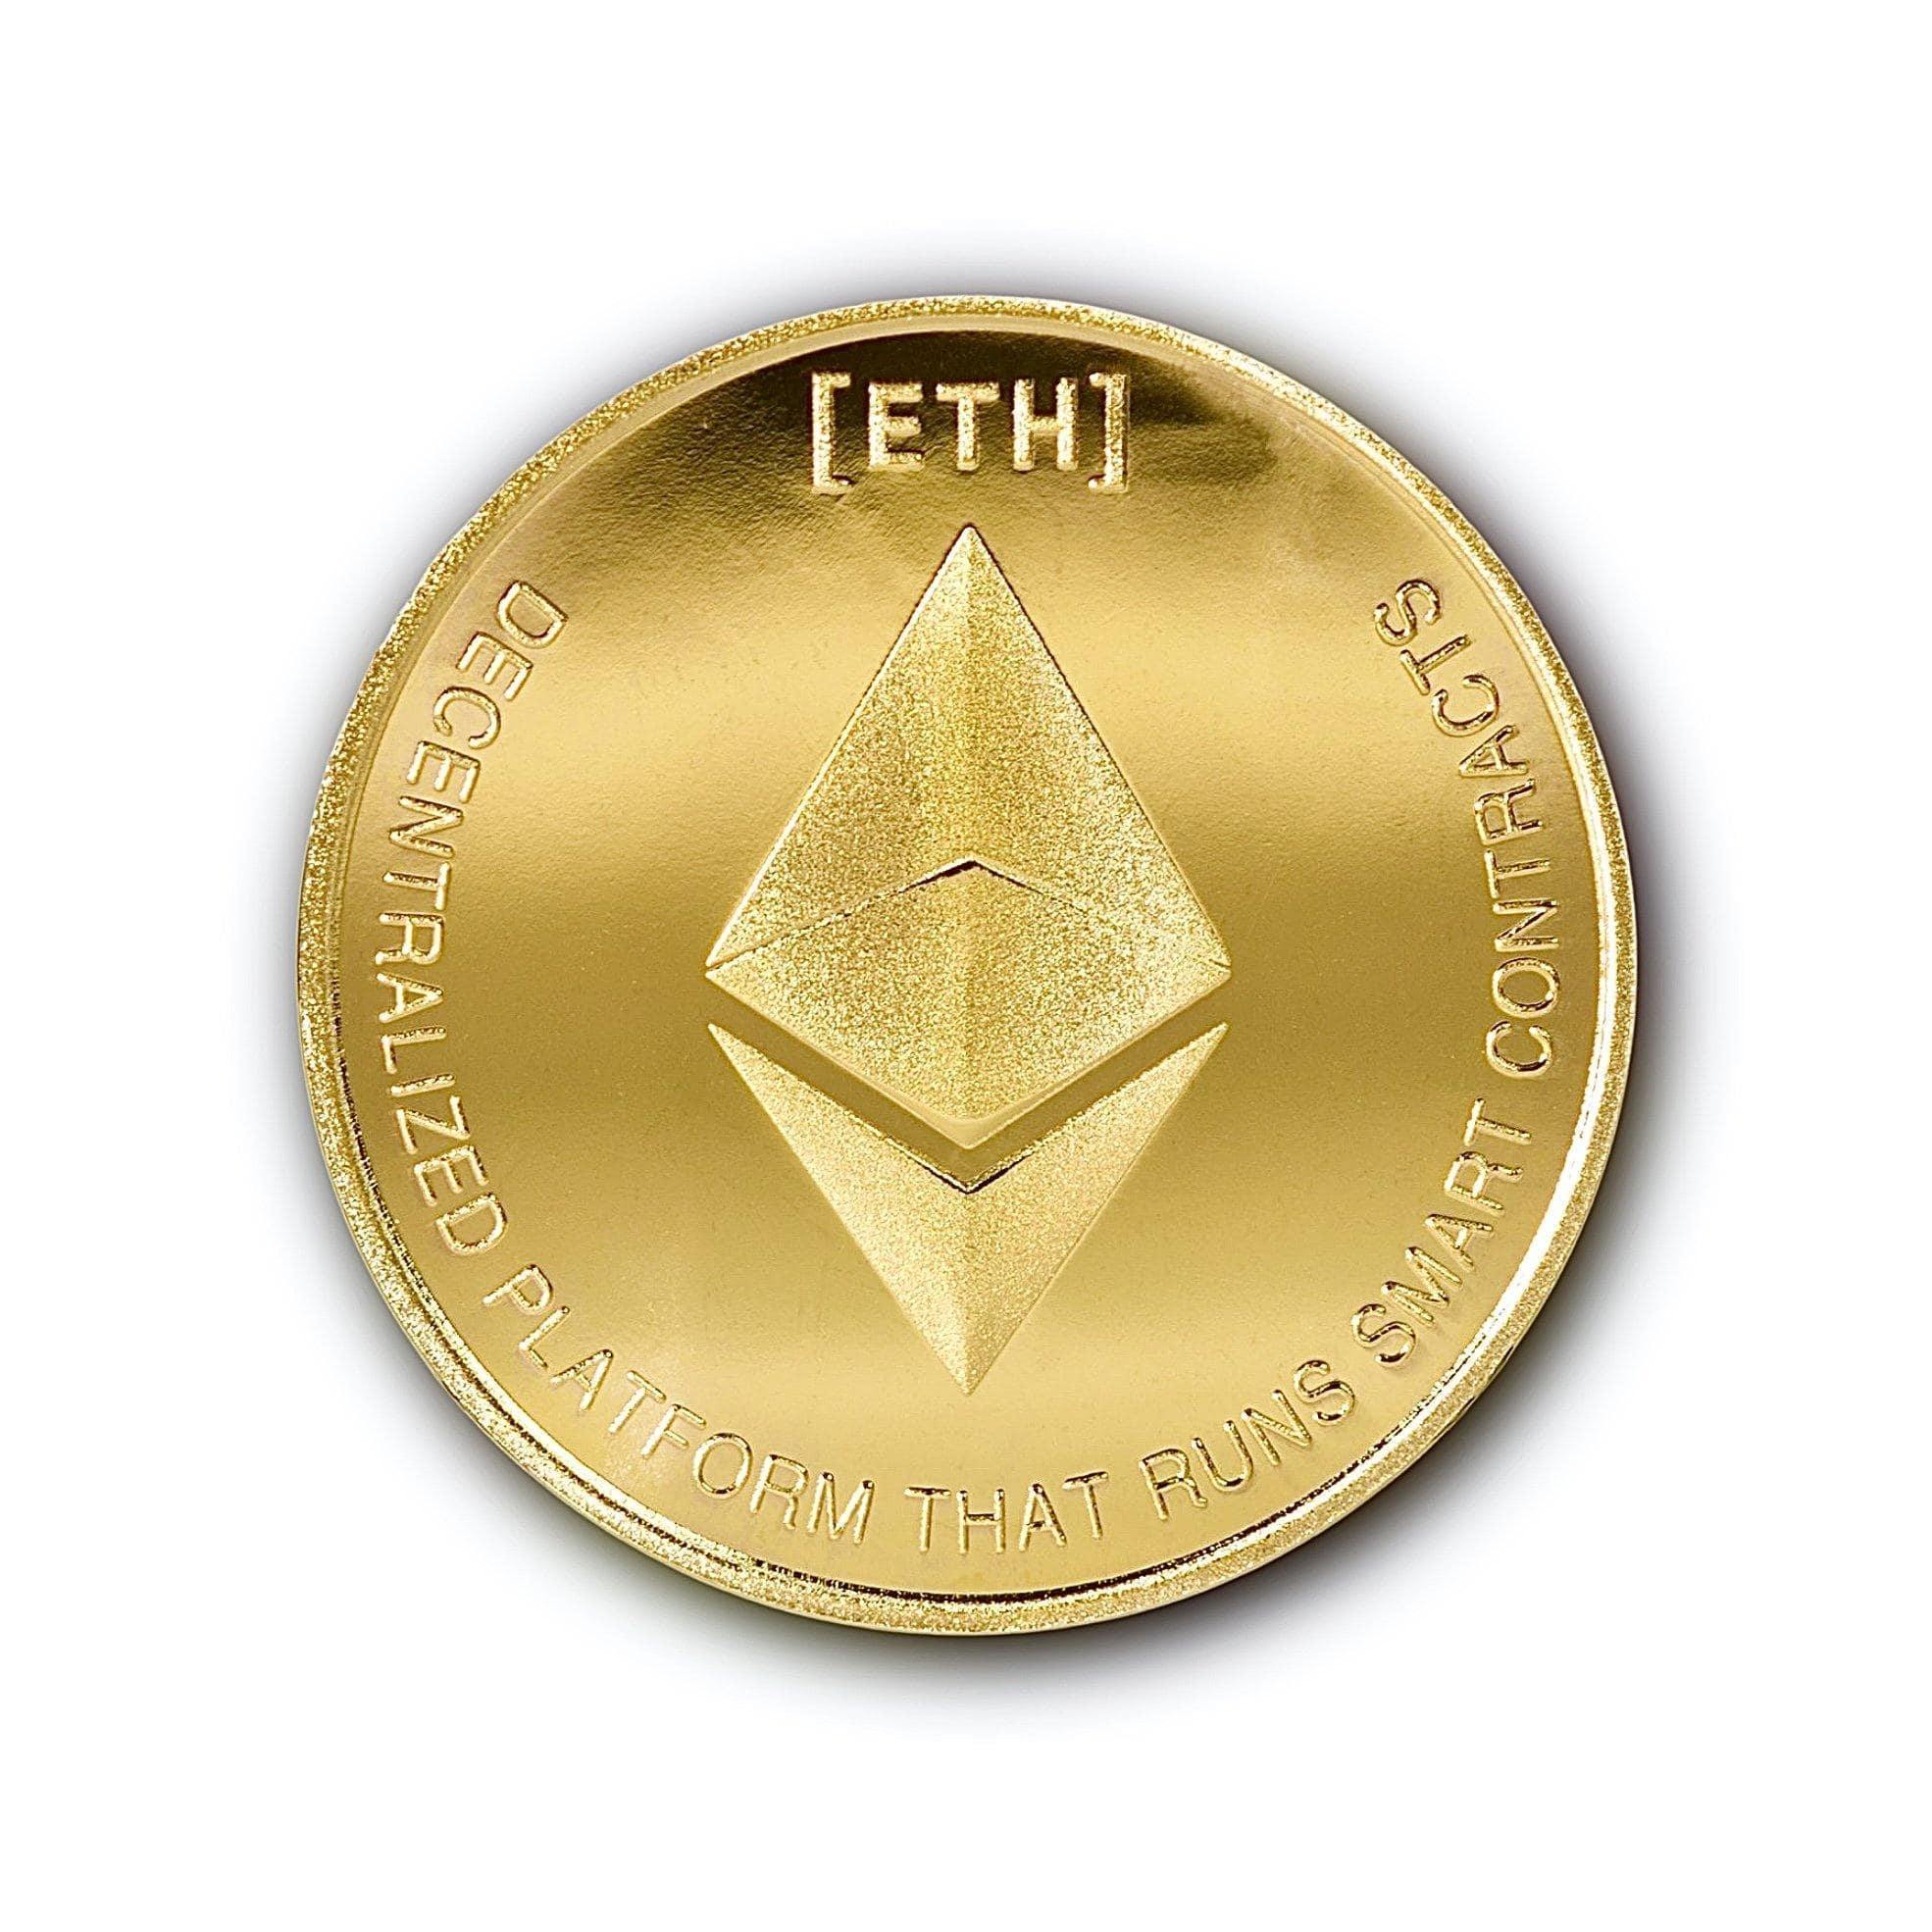 ETHEREUM COIN - ActuallyCrypto